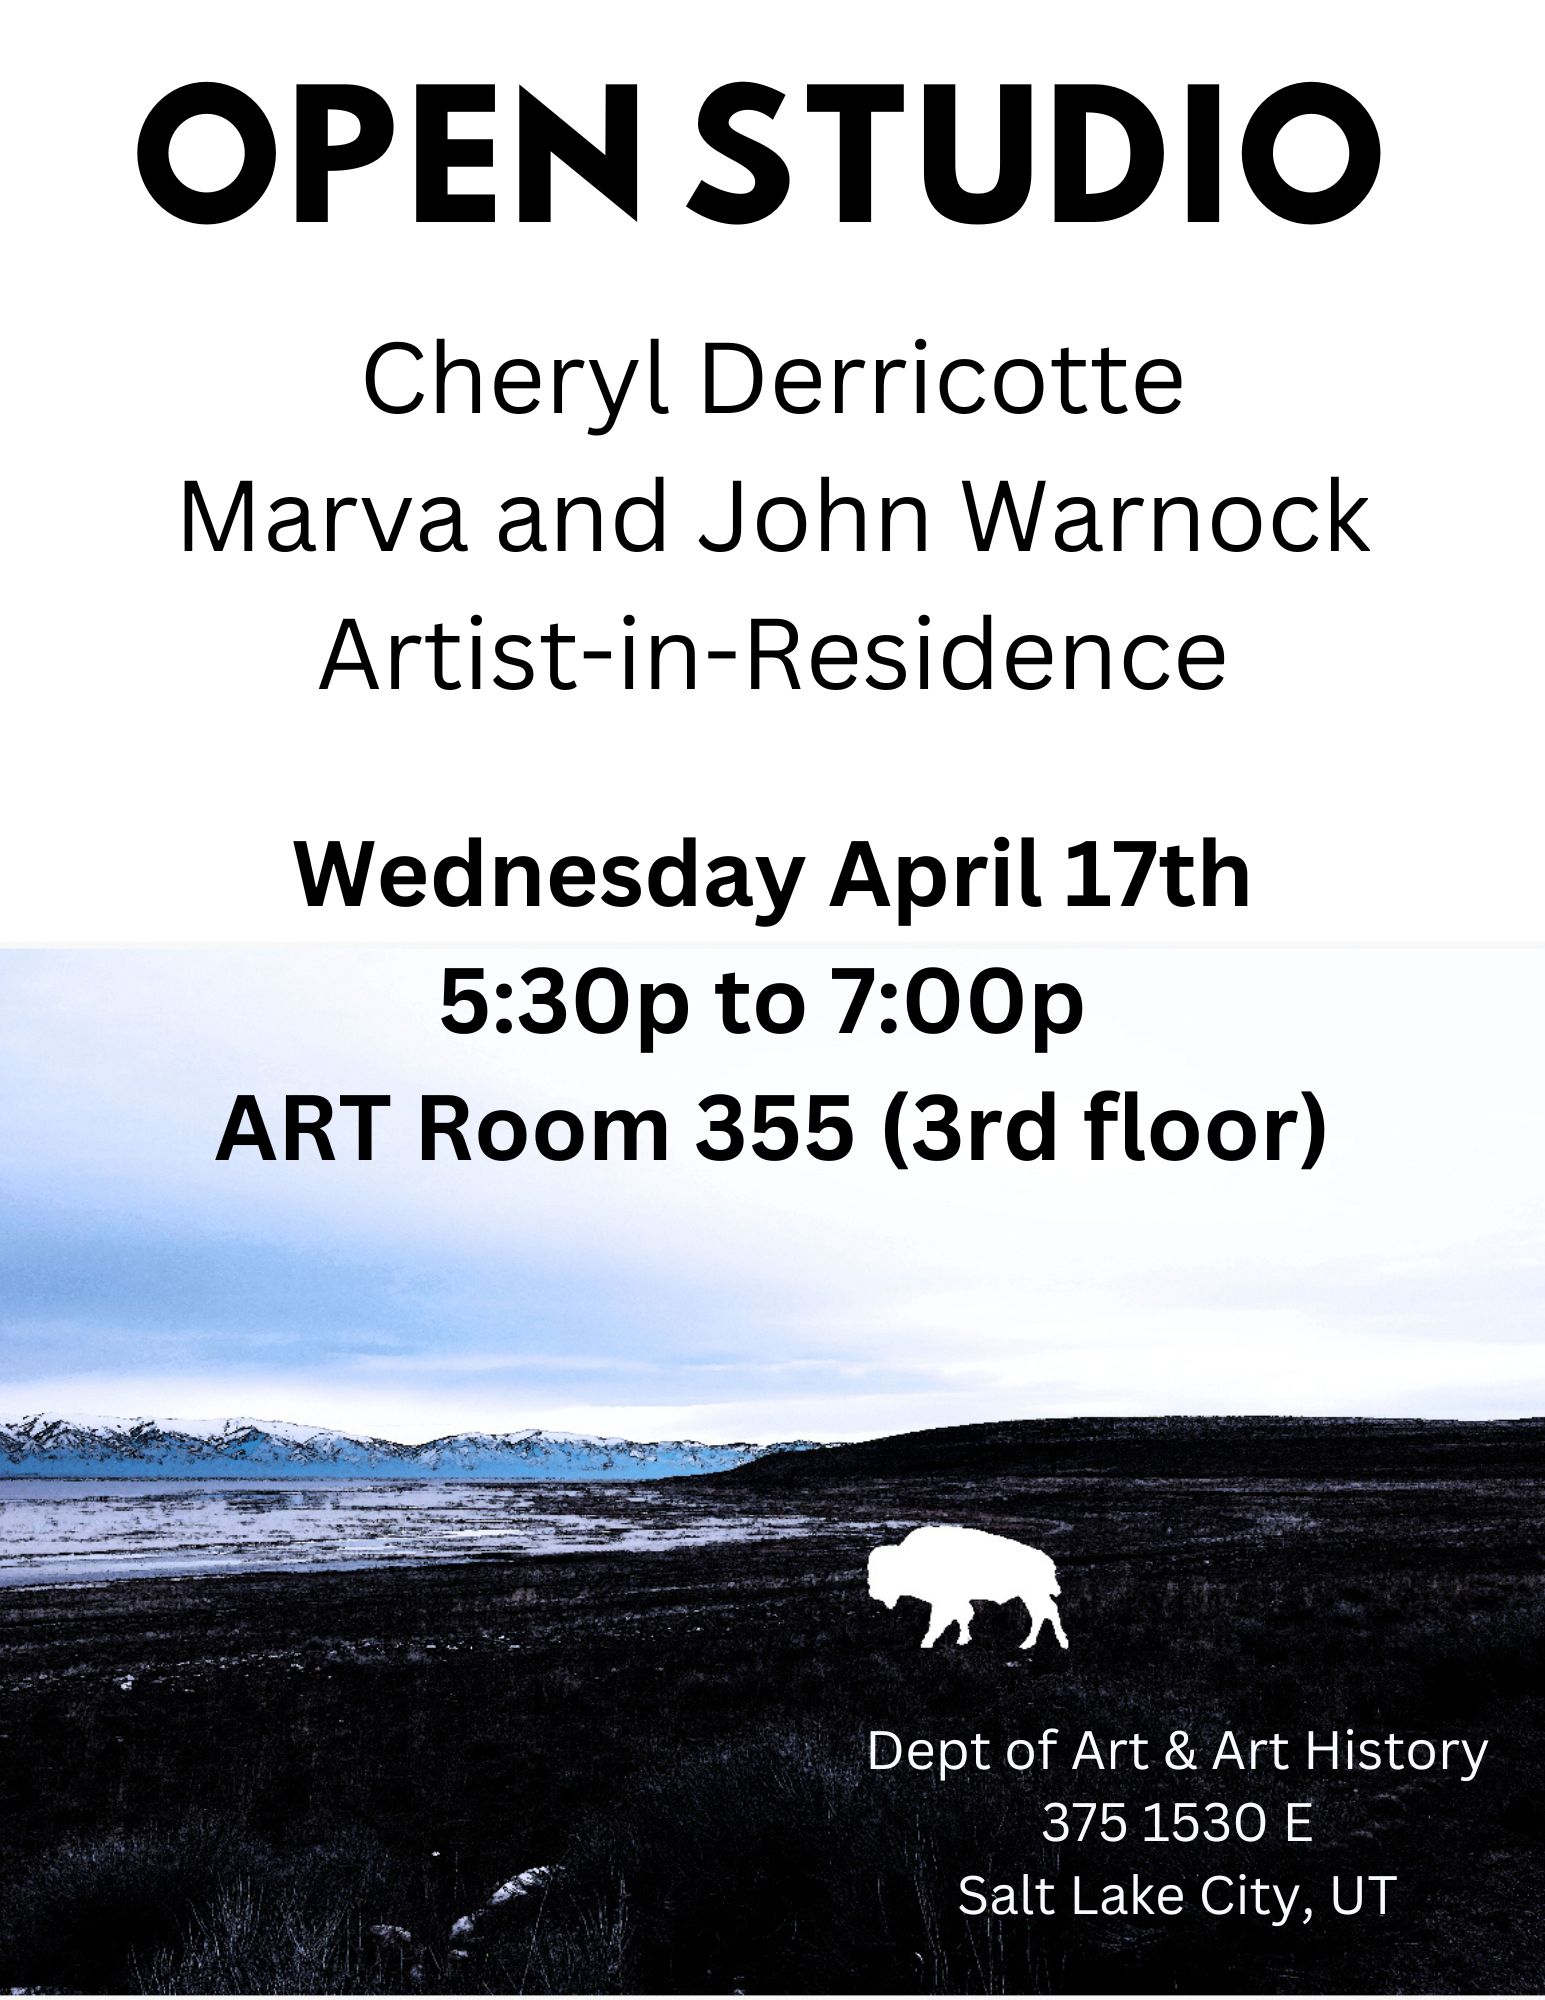 OPEN STUDIO flyer Cheryl Derricotte Marva and John Warnock Artist-in-Residence